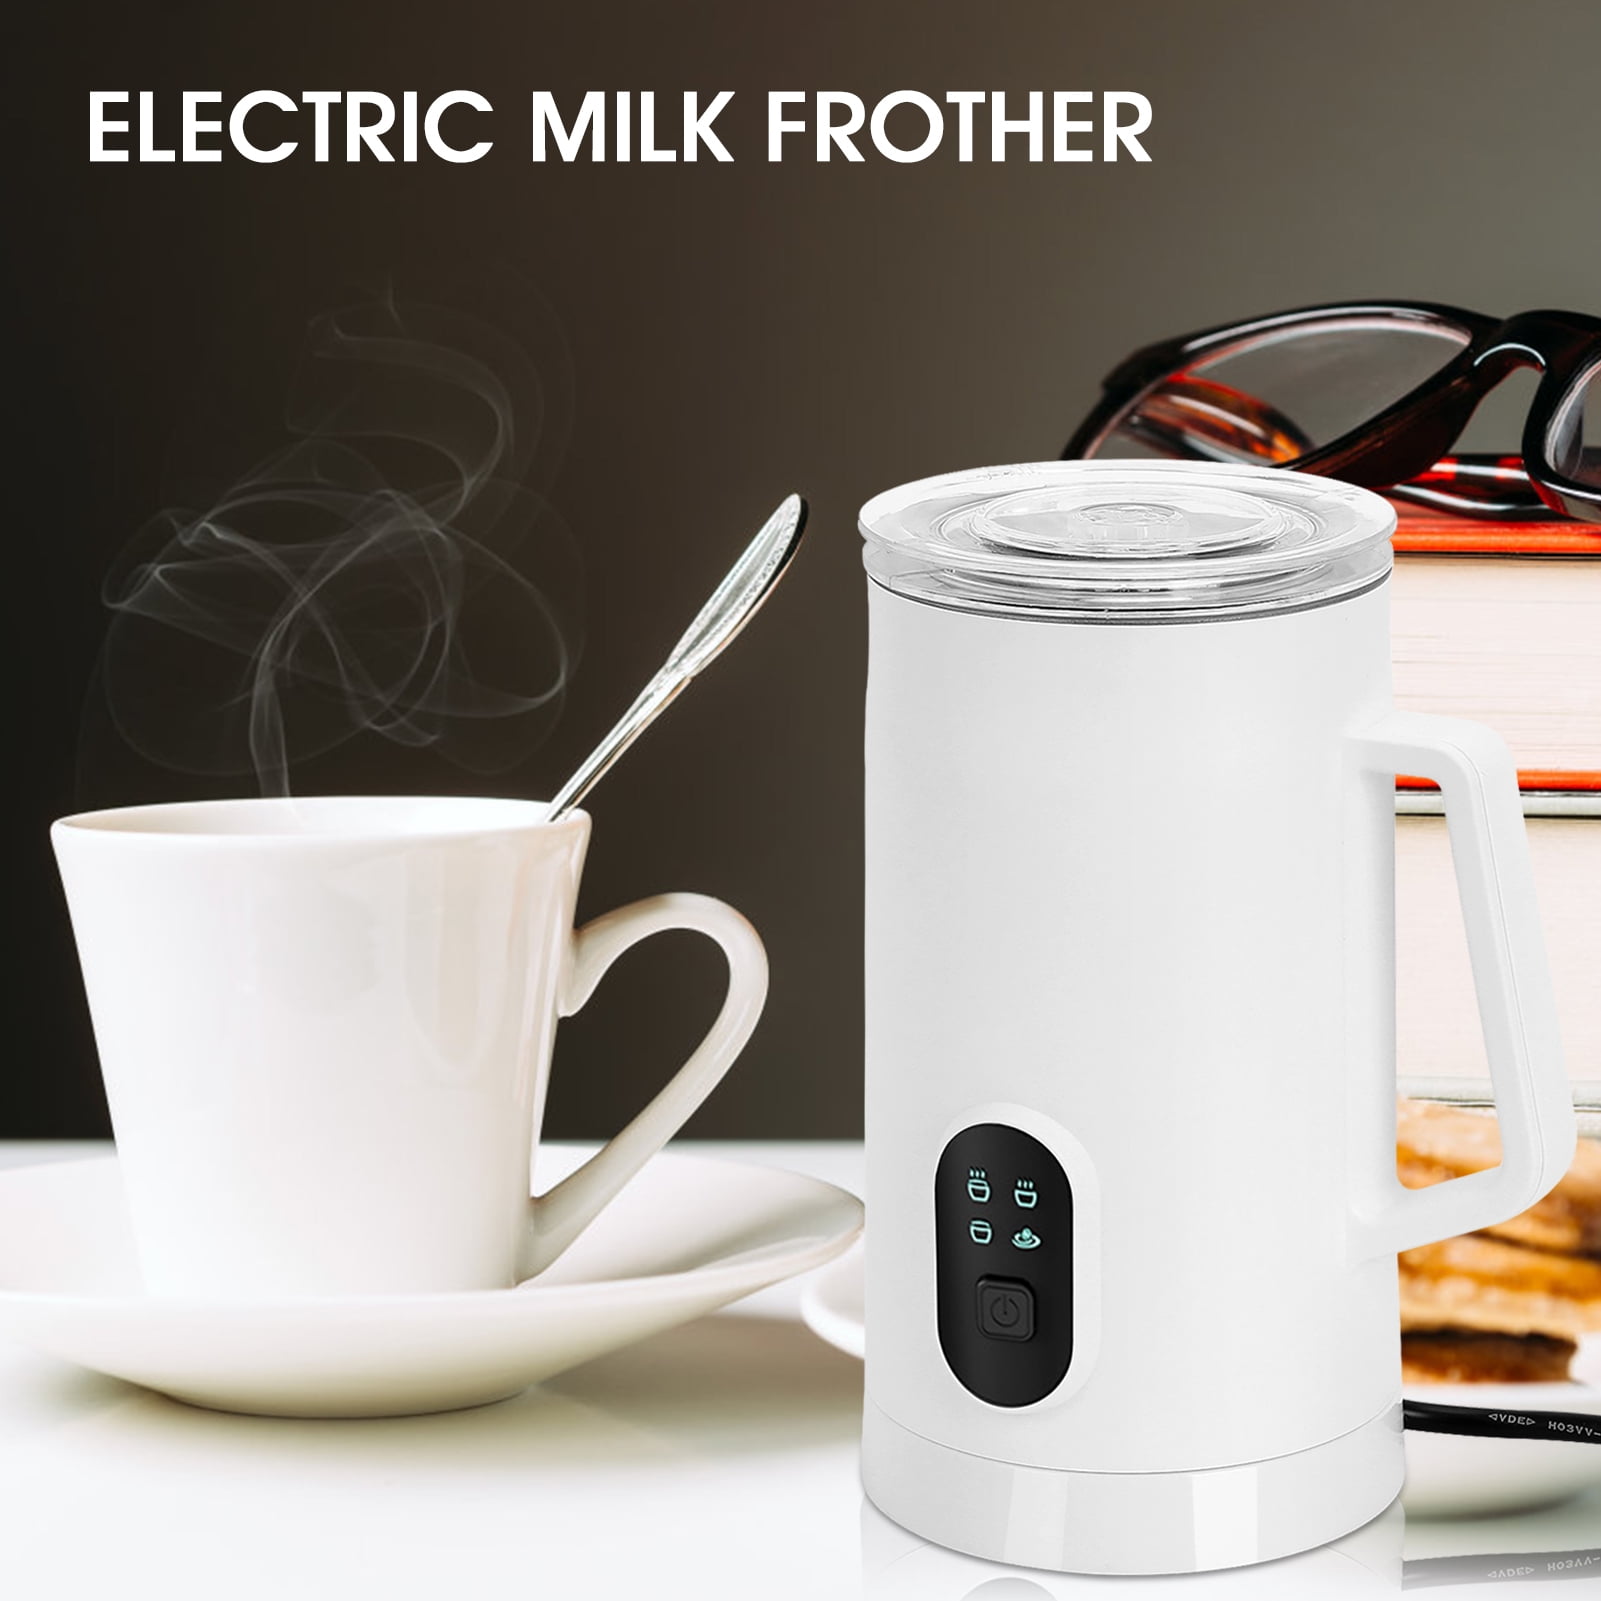 Milk Boss Electric Handheld Milk Frother - Golden Gait Mercantile